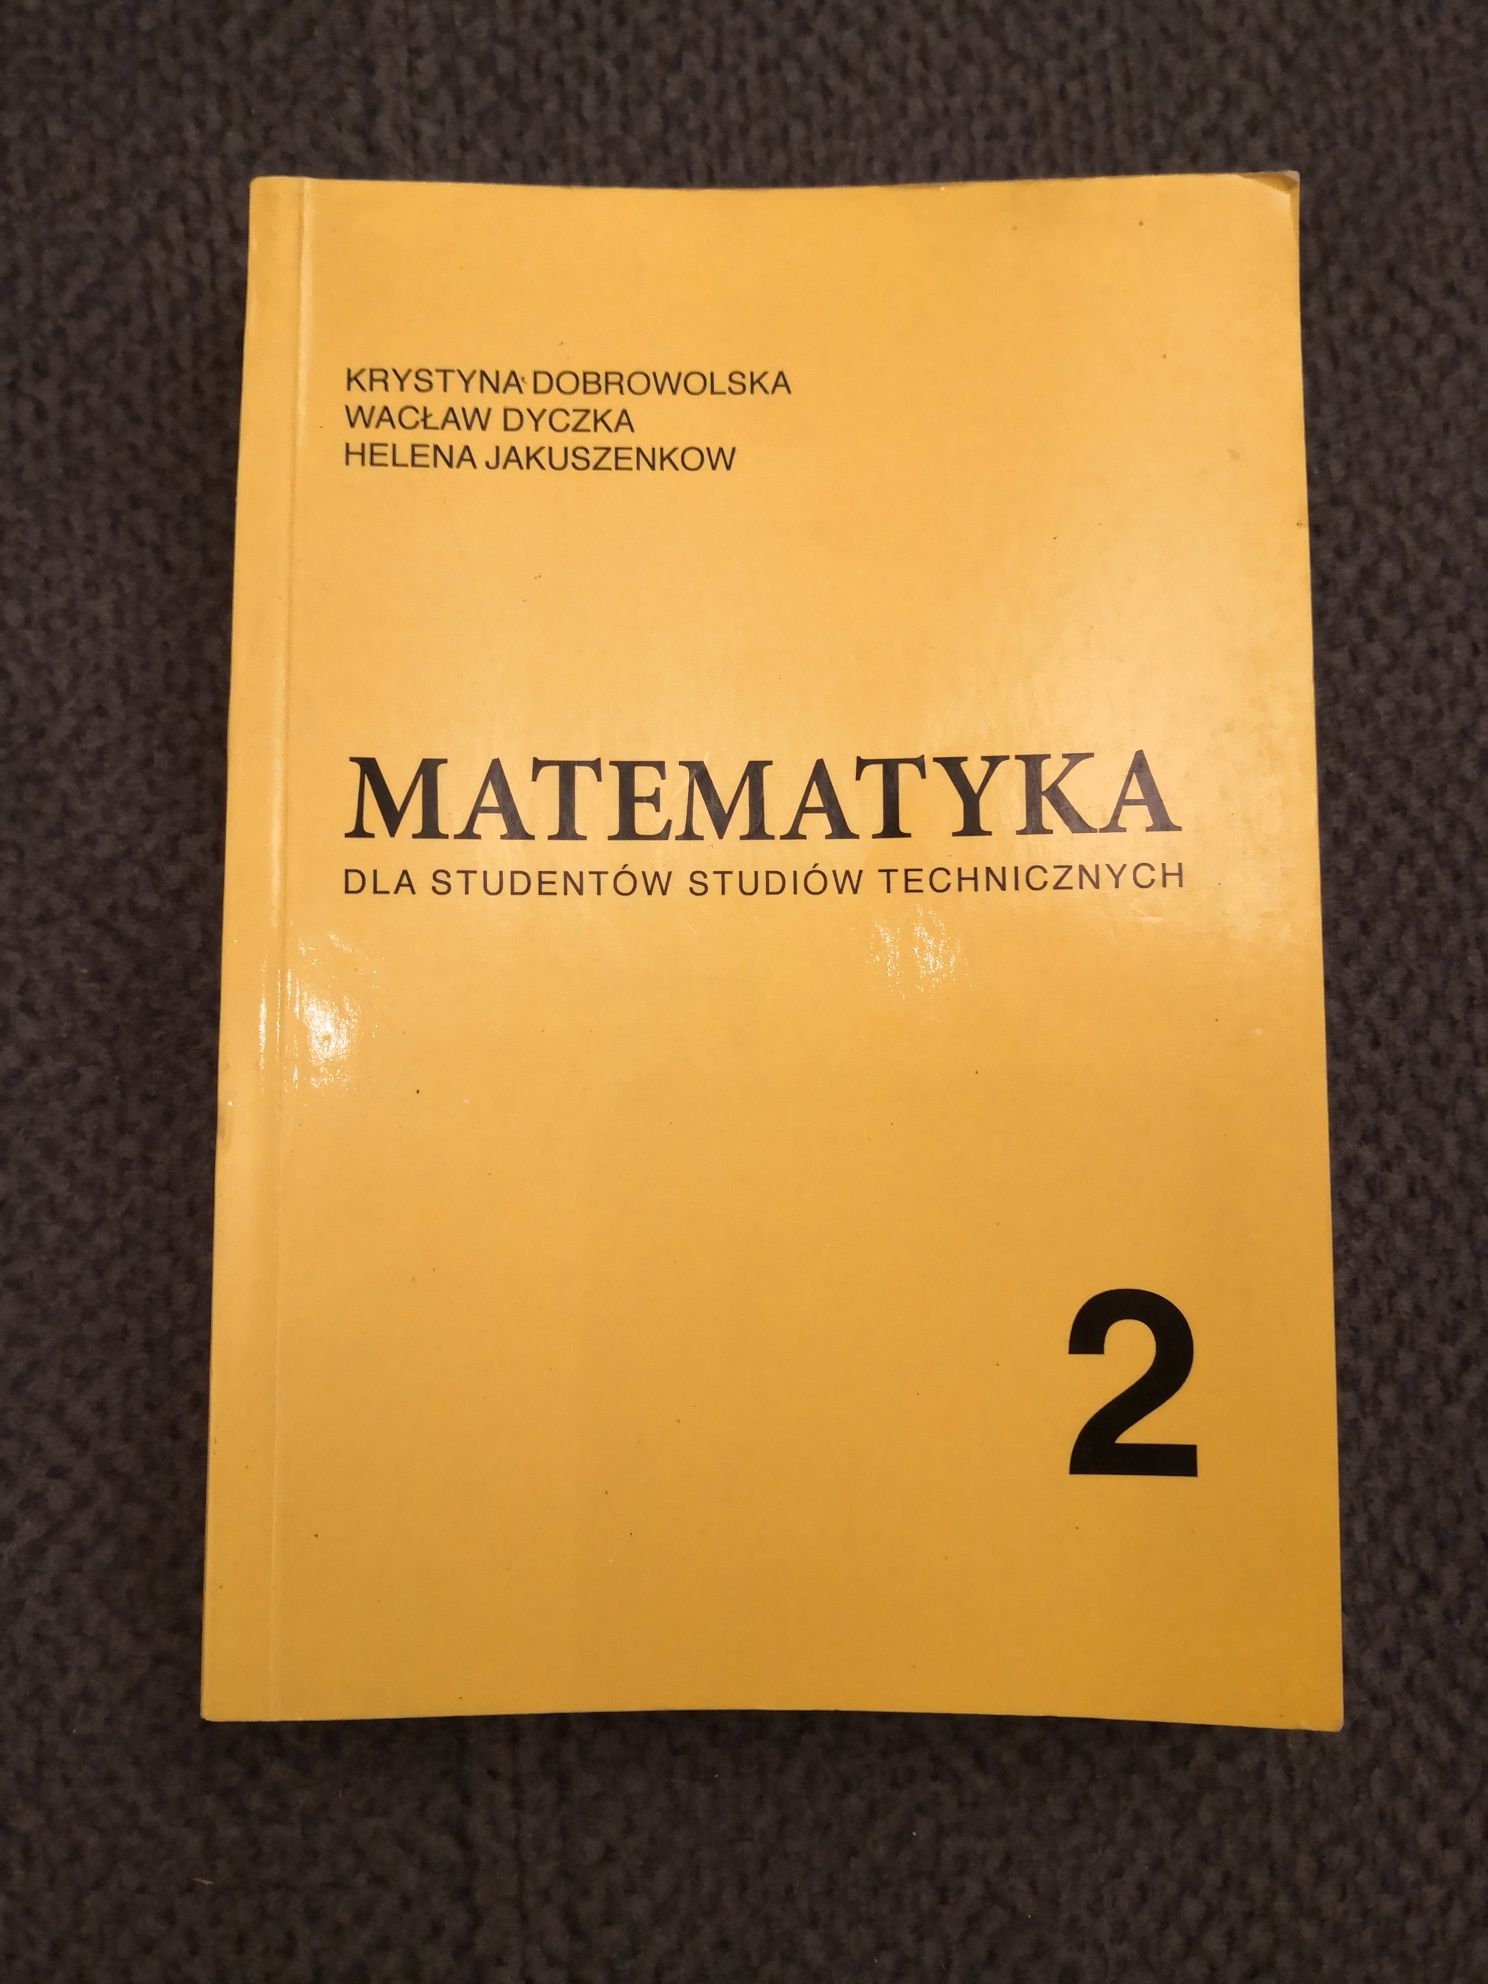 Matematyka 2 Dobrowolska, Dyczka, Jakuszenkow